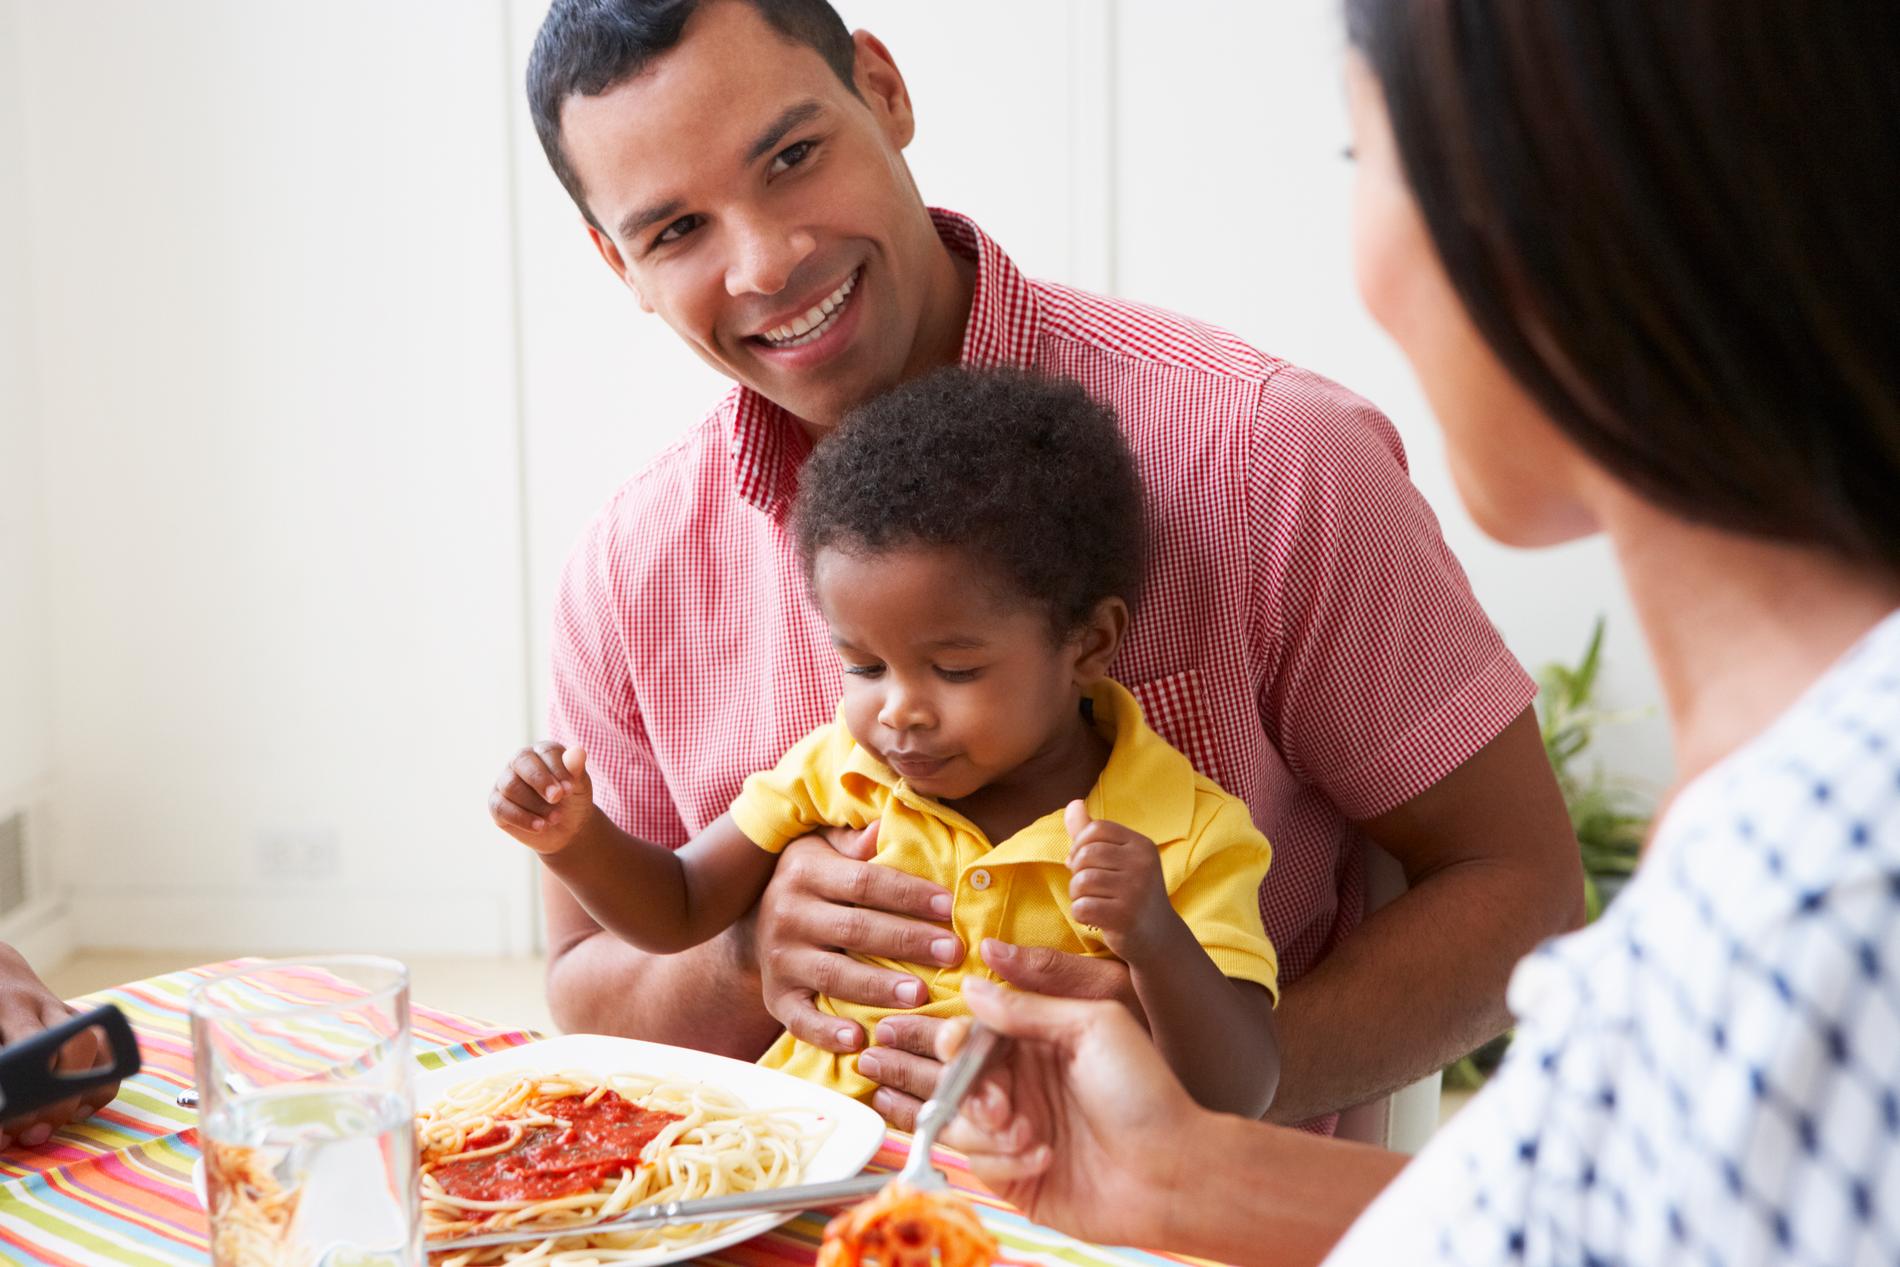 – Familjer idag har svårt att hitta en stund att äta och umgås tillsammans, säger Mats-Eric Nilsson.